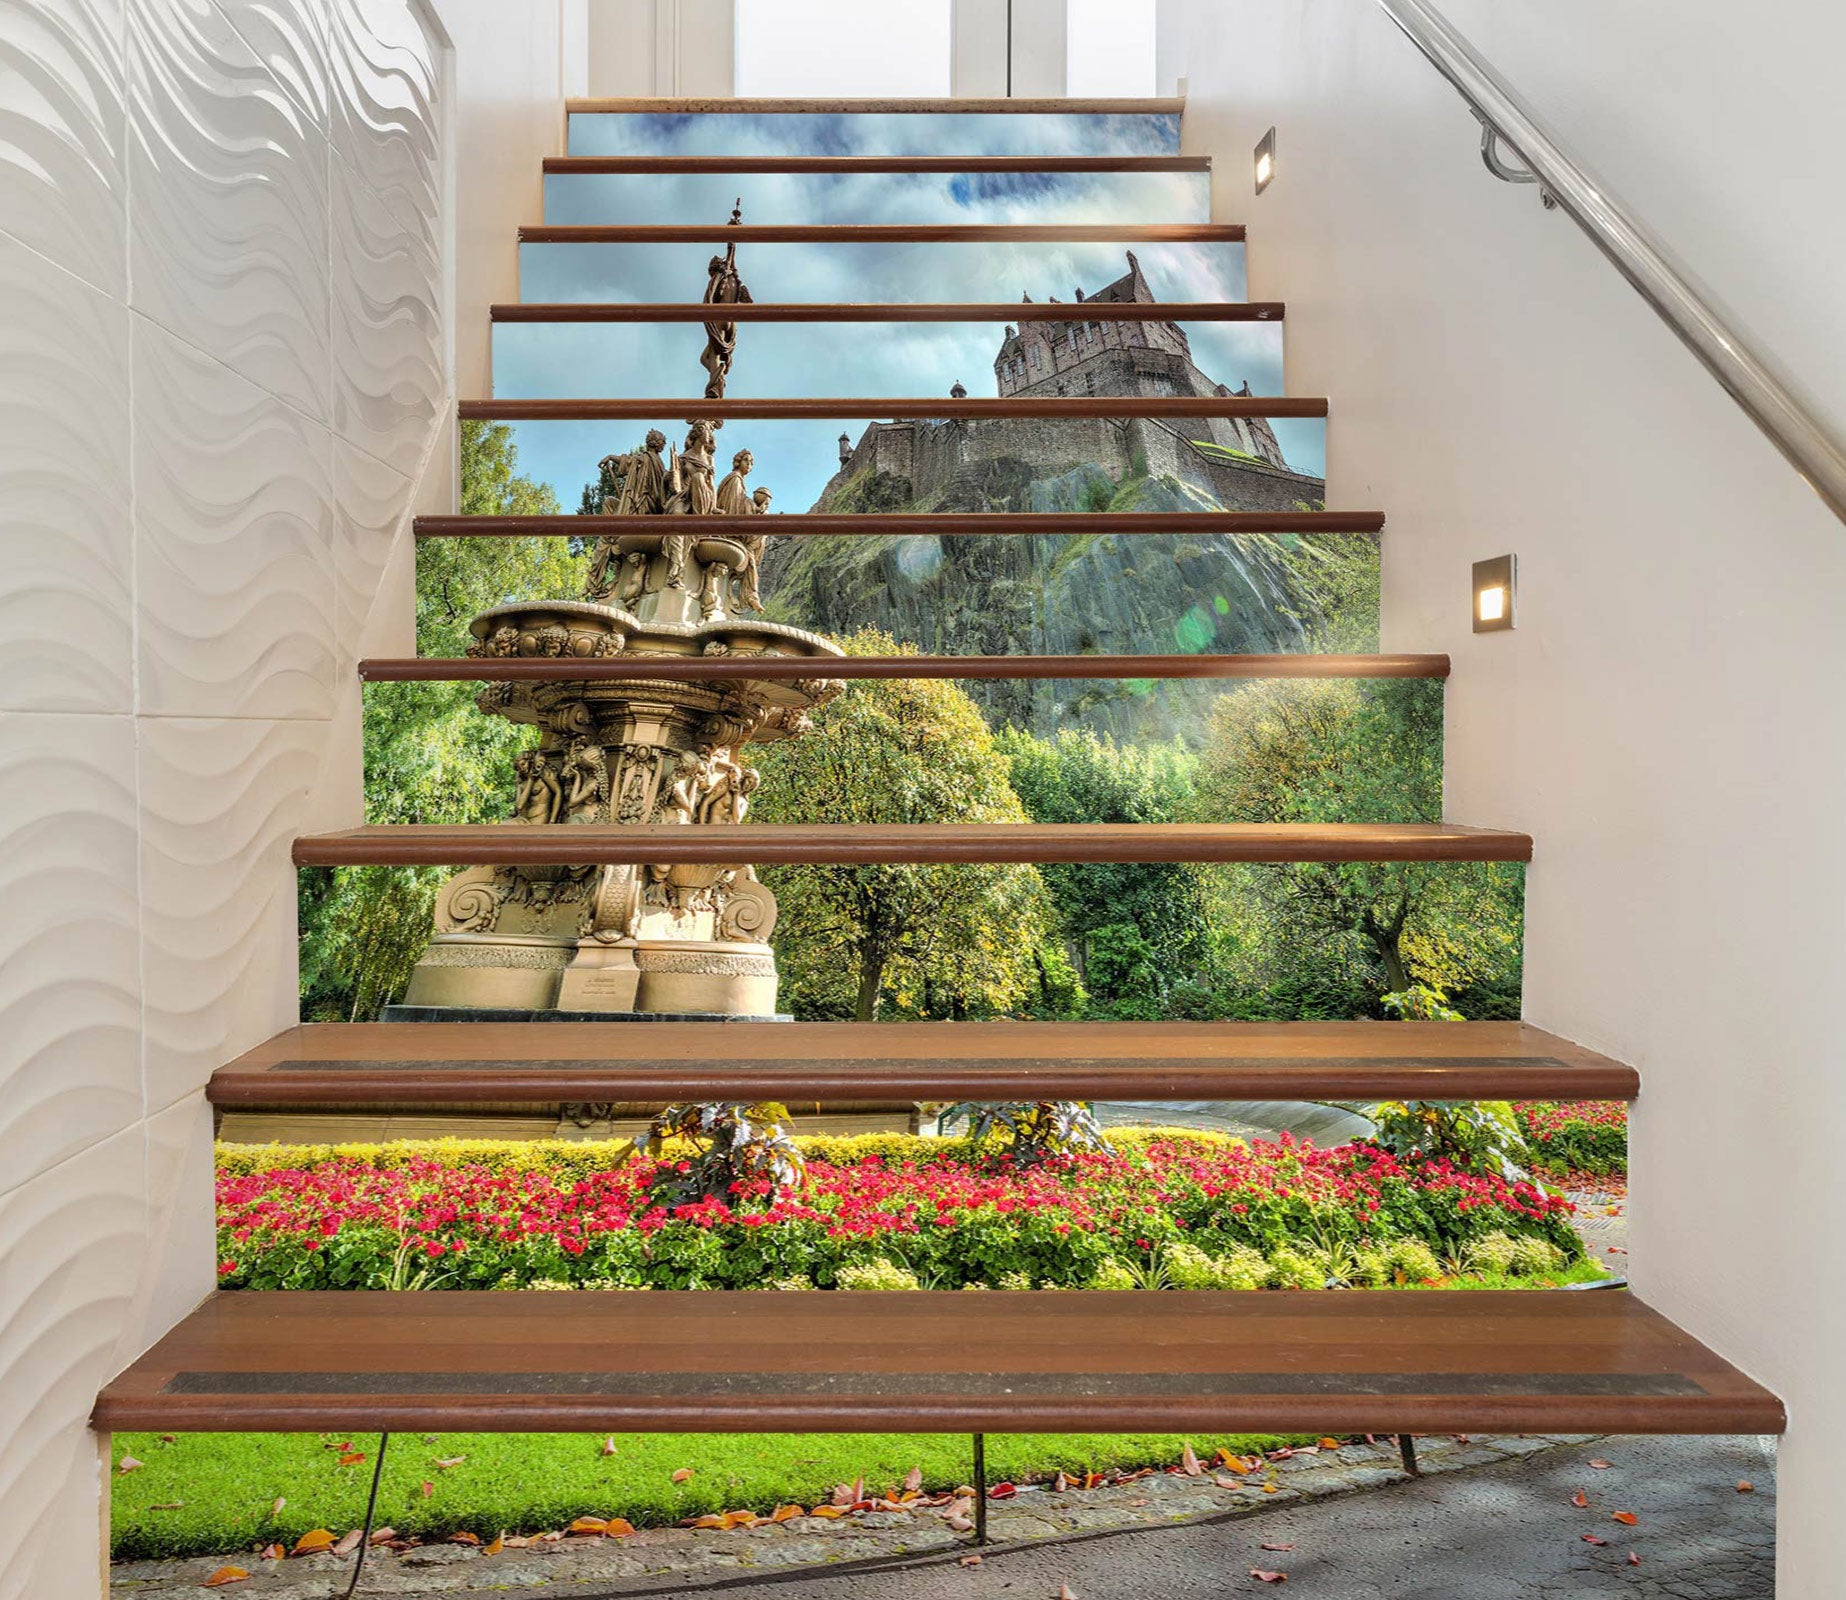 3D Garden Statue 9967 Assaf Frank Stair Risers